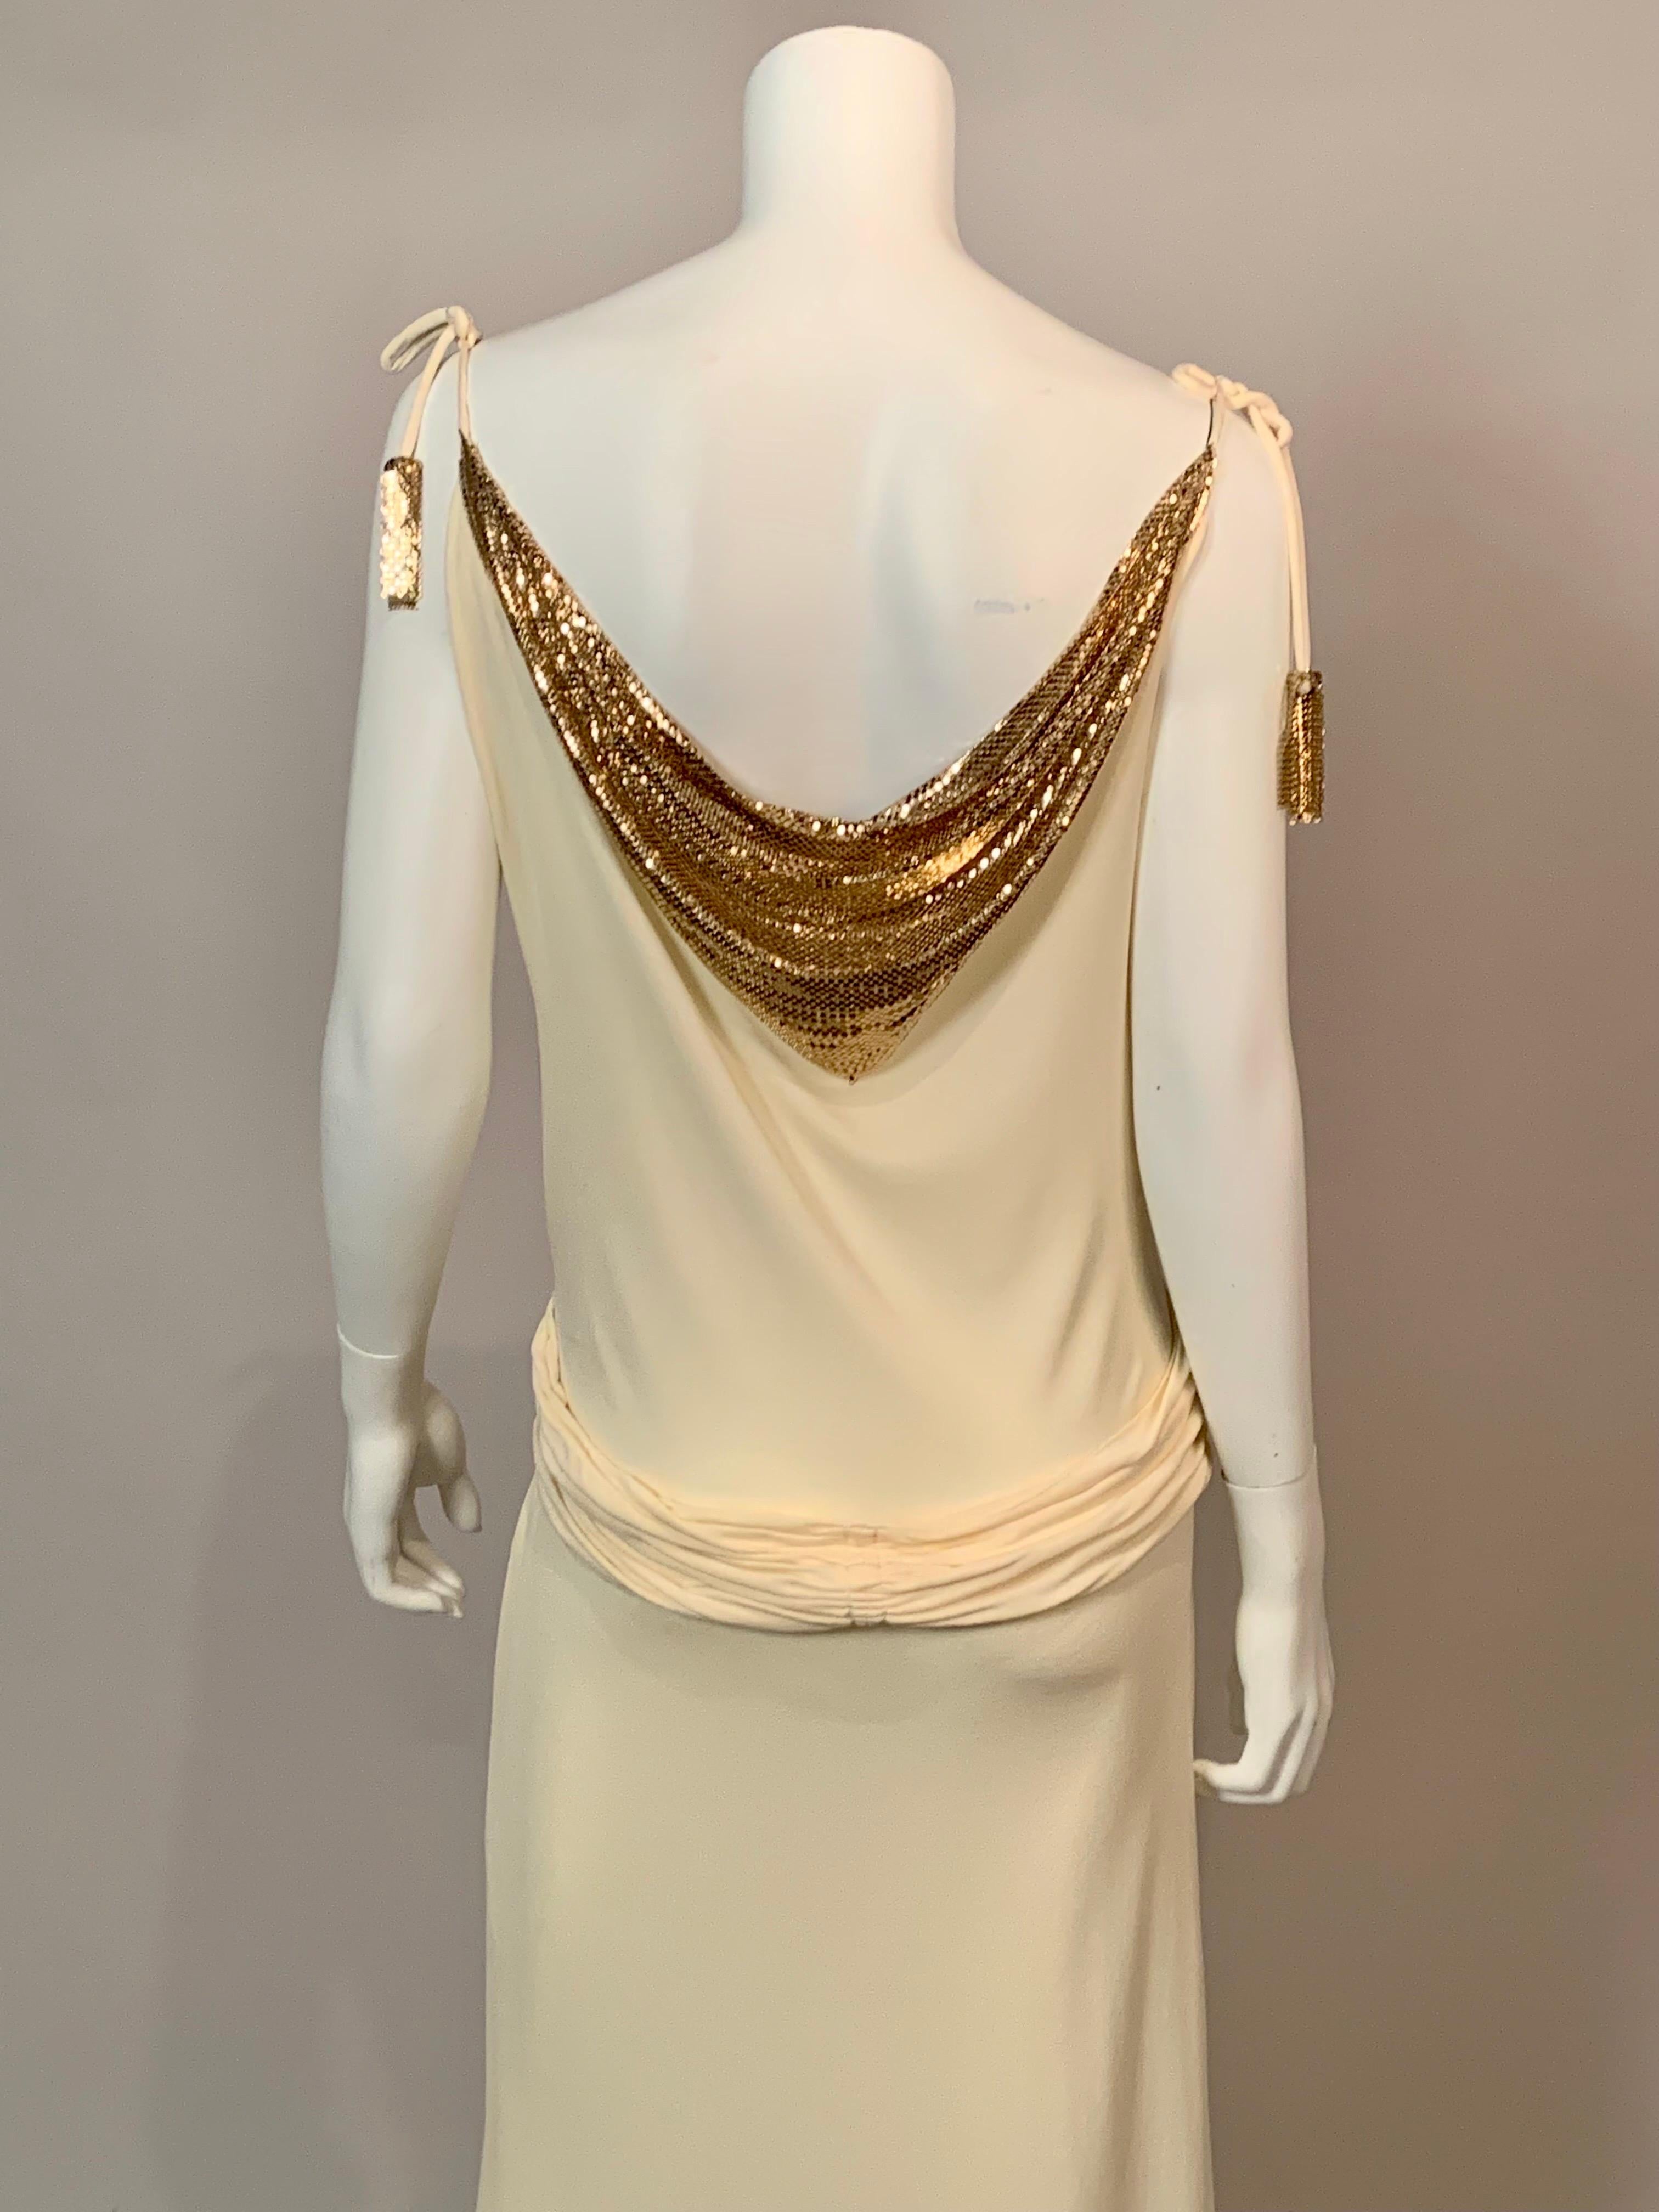 Whiting & Davis Gold Metal Mesh Embellished Cream Jersey Dress 4